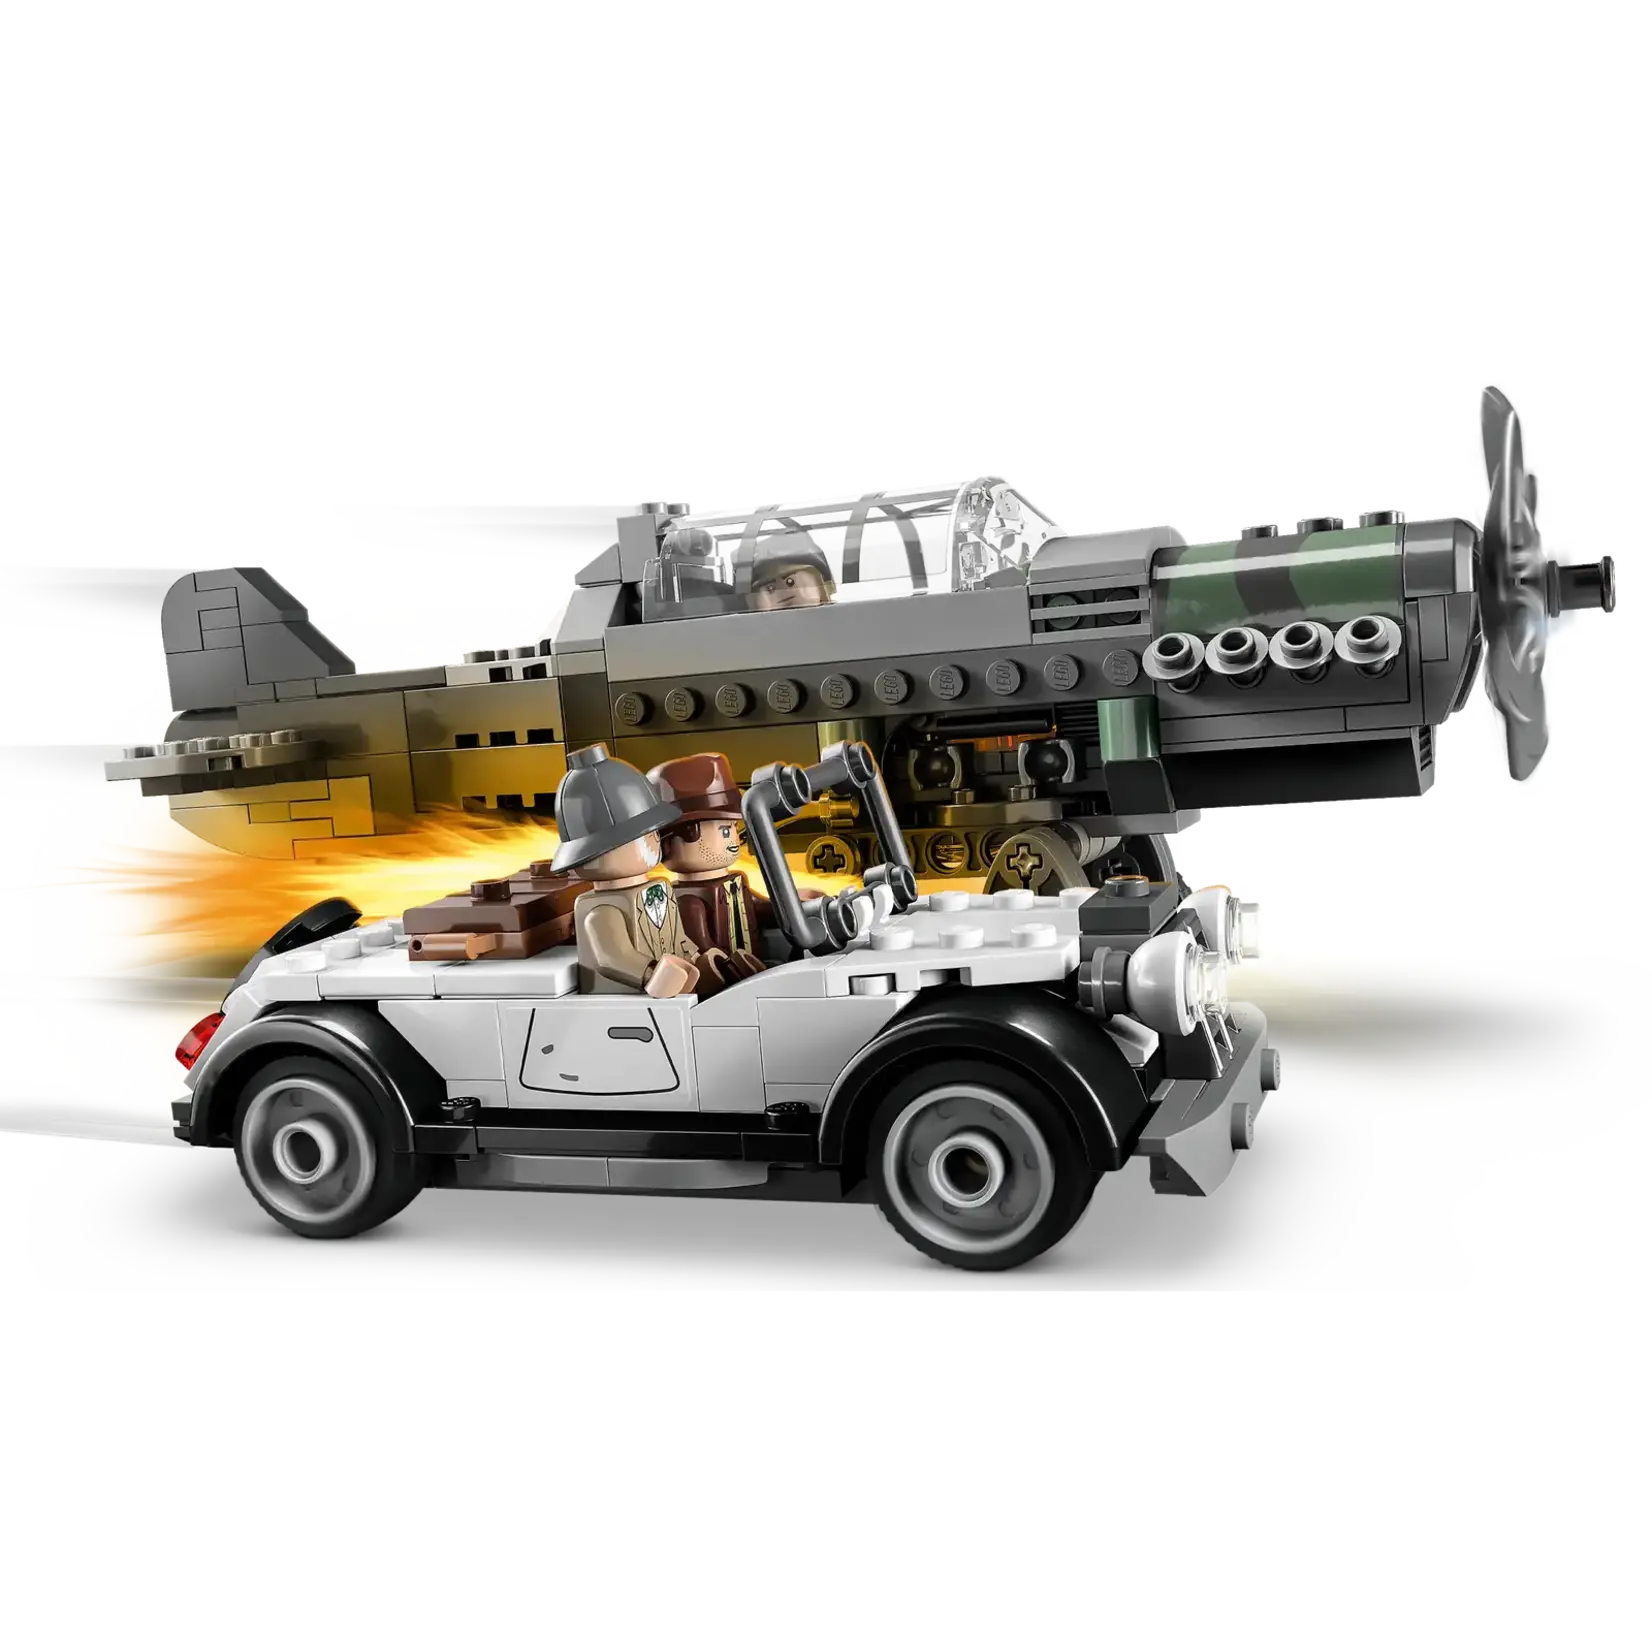 LEGO LEGO Indiana Jones Gevechtsvliegtuig Achtervolging (77012)